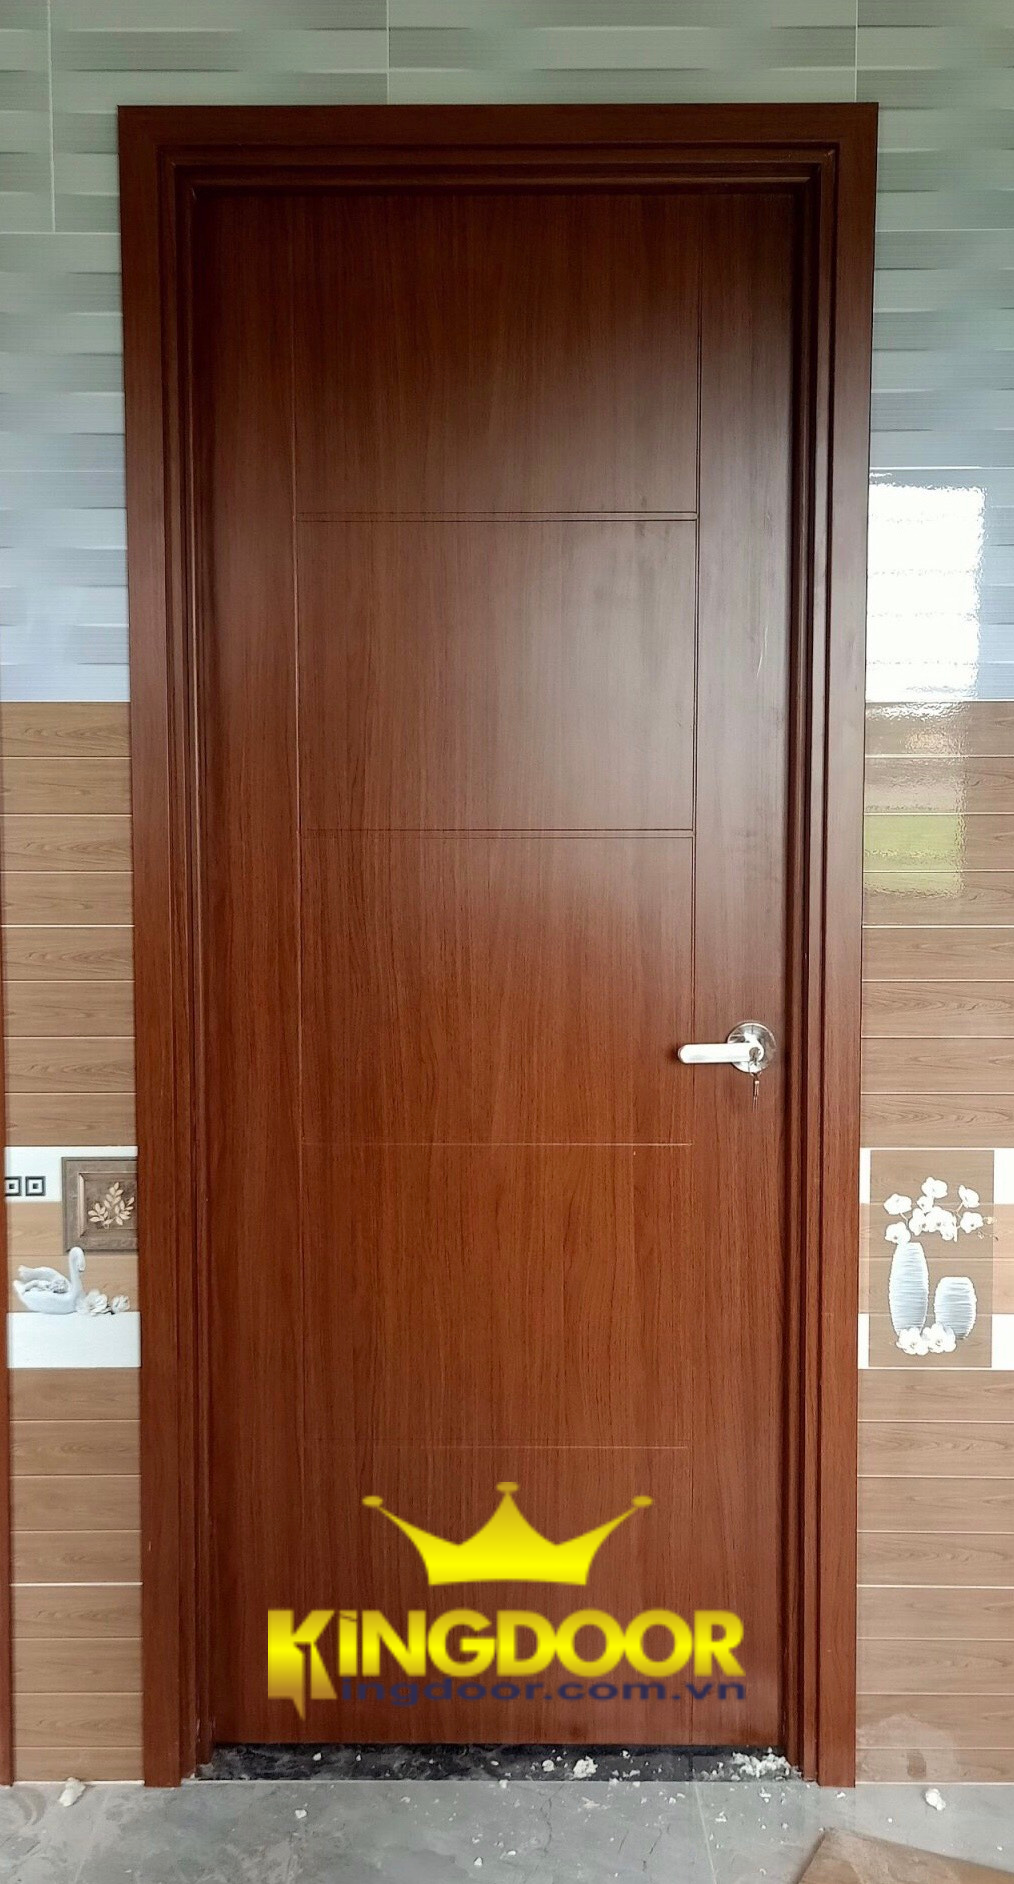 Mẫu cửa nhựa gỗ Compoiste - trông giống cửa gỗ thật.